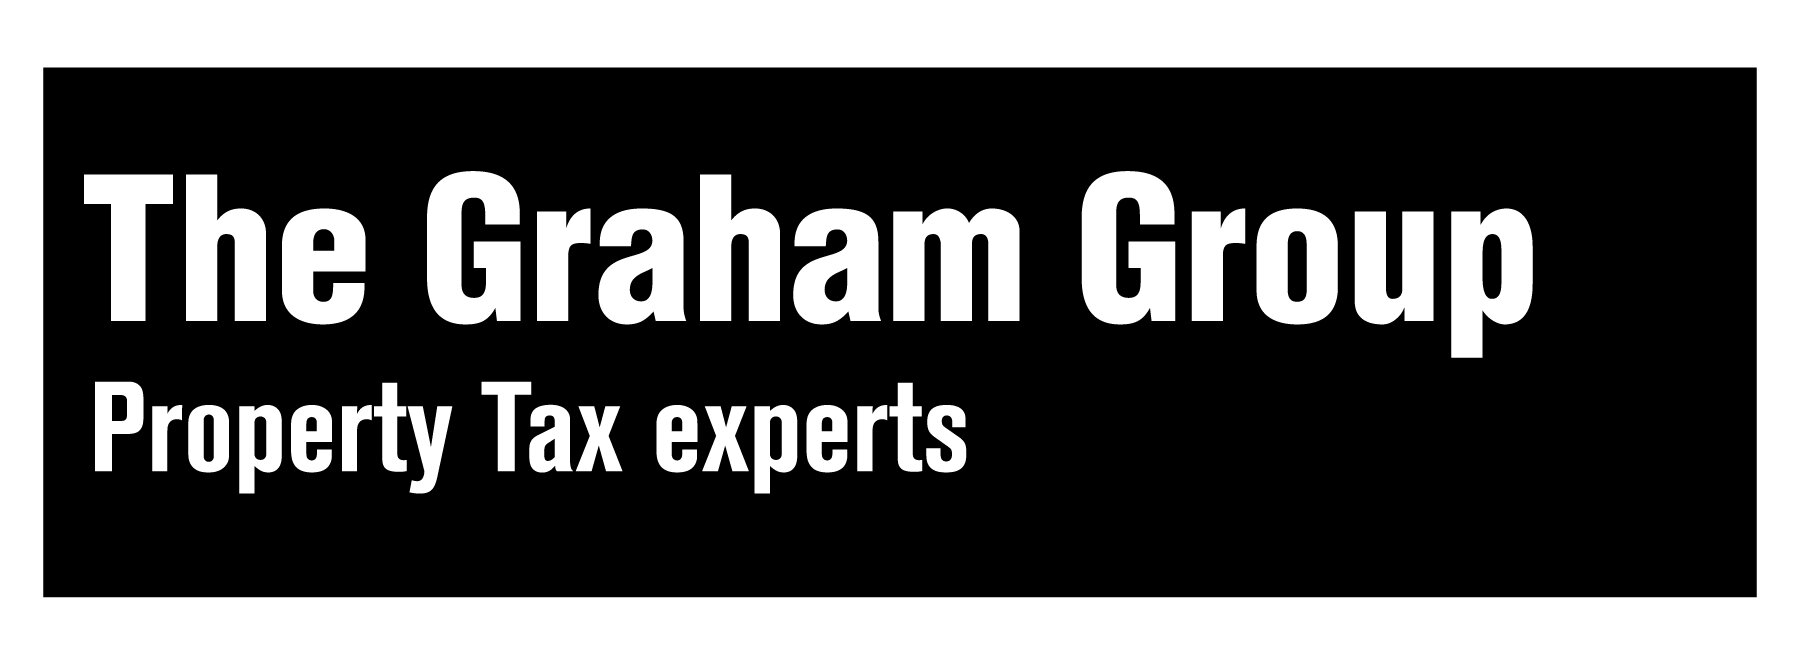 the-graham-group.jpg